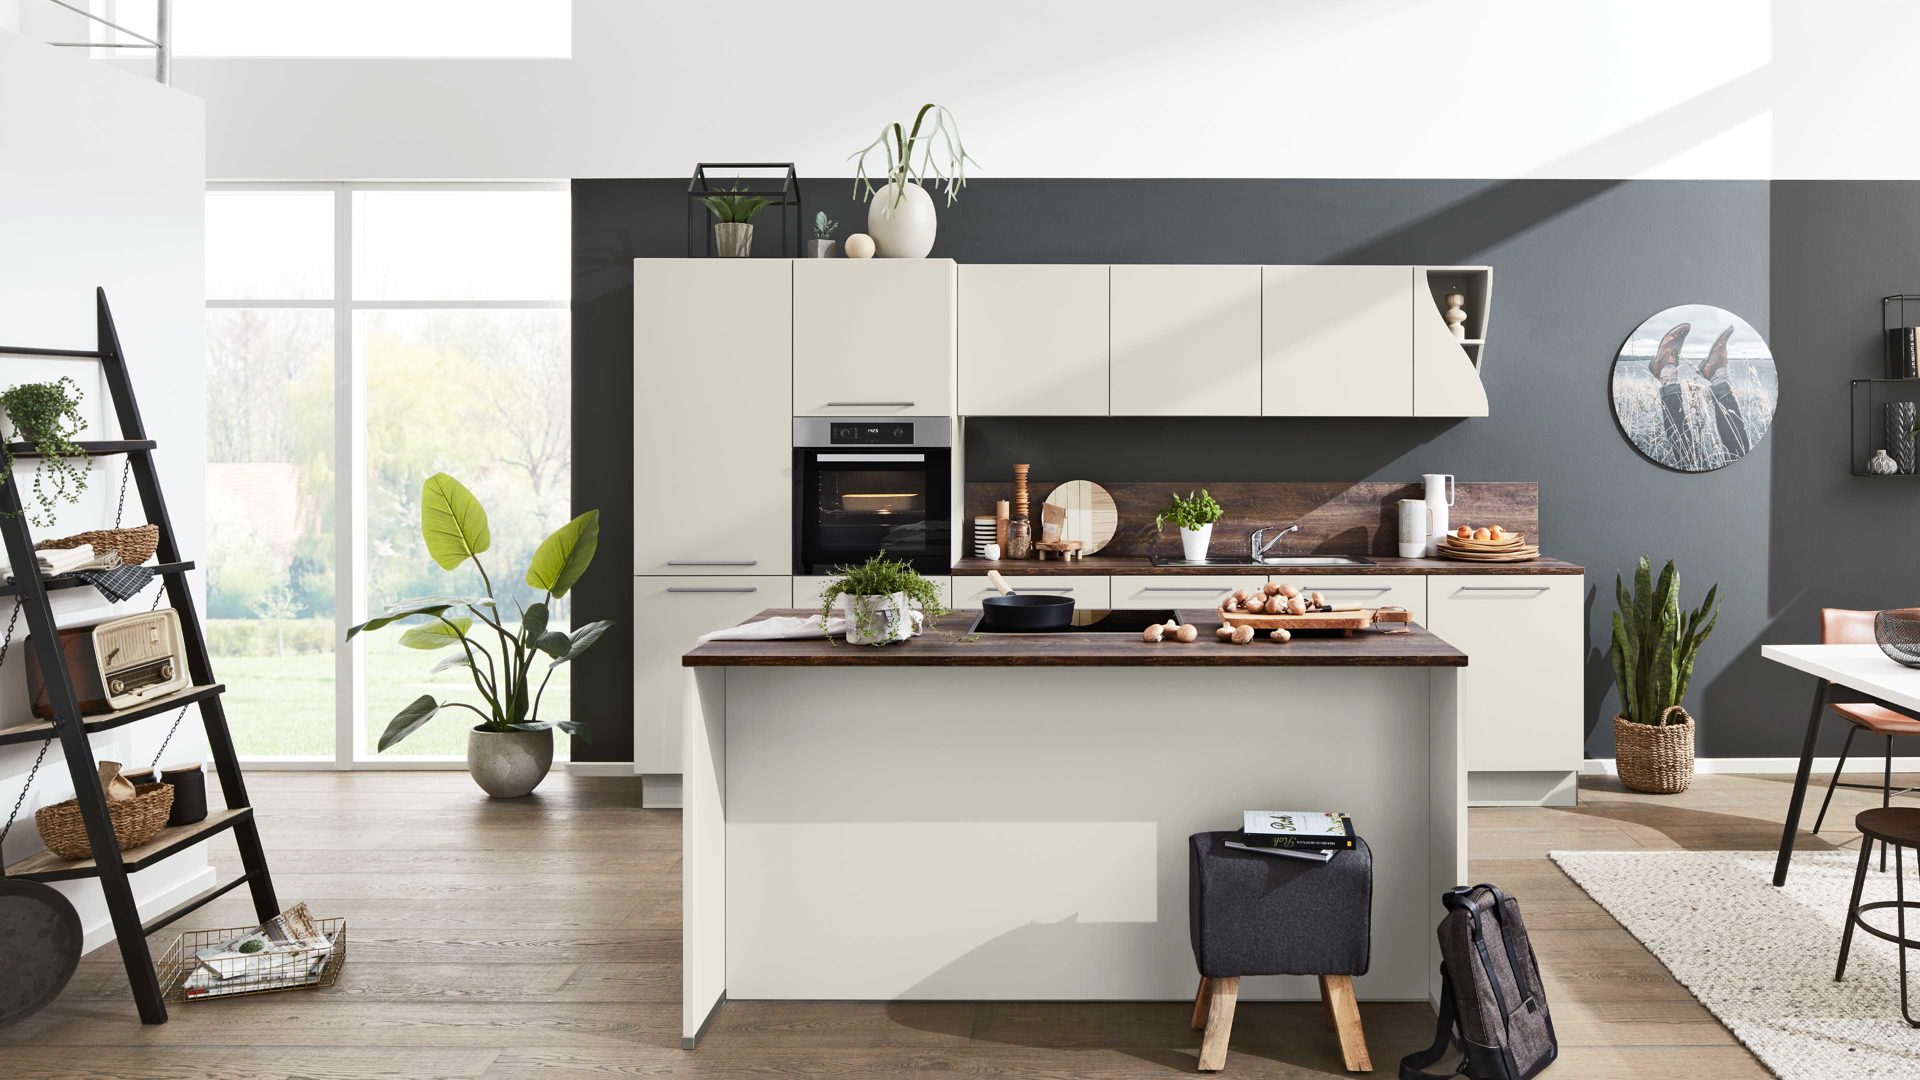 Einbauküche Interliving aus Holz in Grau Interliving Küche Serie 3028 mit MIELE-Einbaugeräten Platingrau & Barrique Eiche - zweizeilig